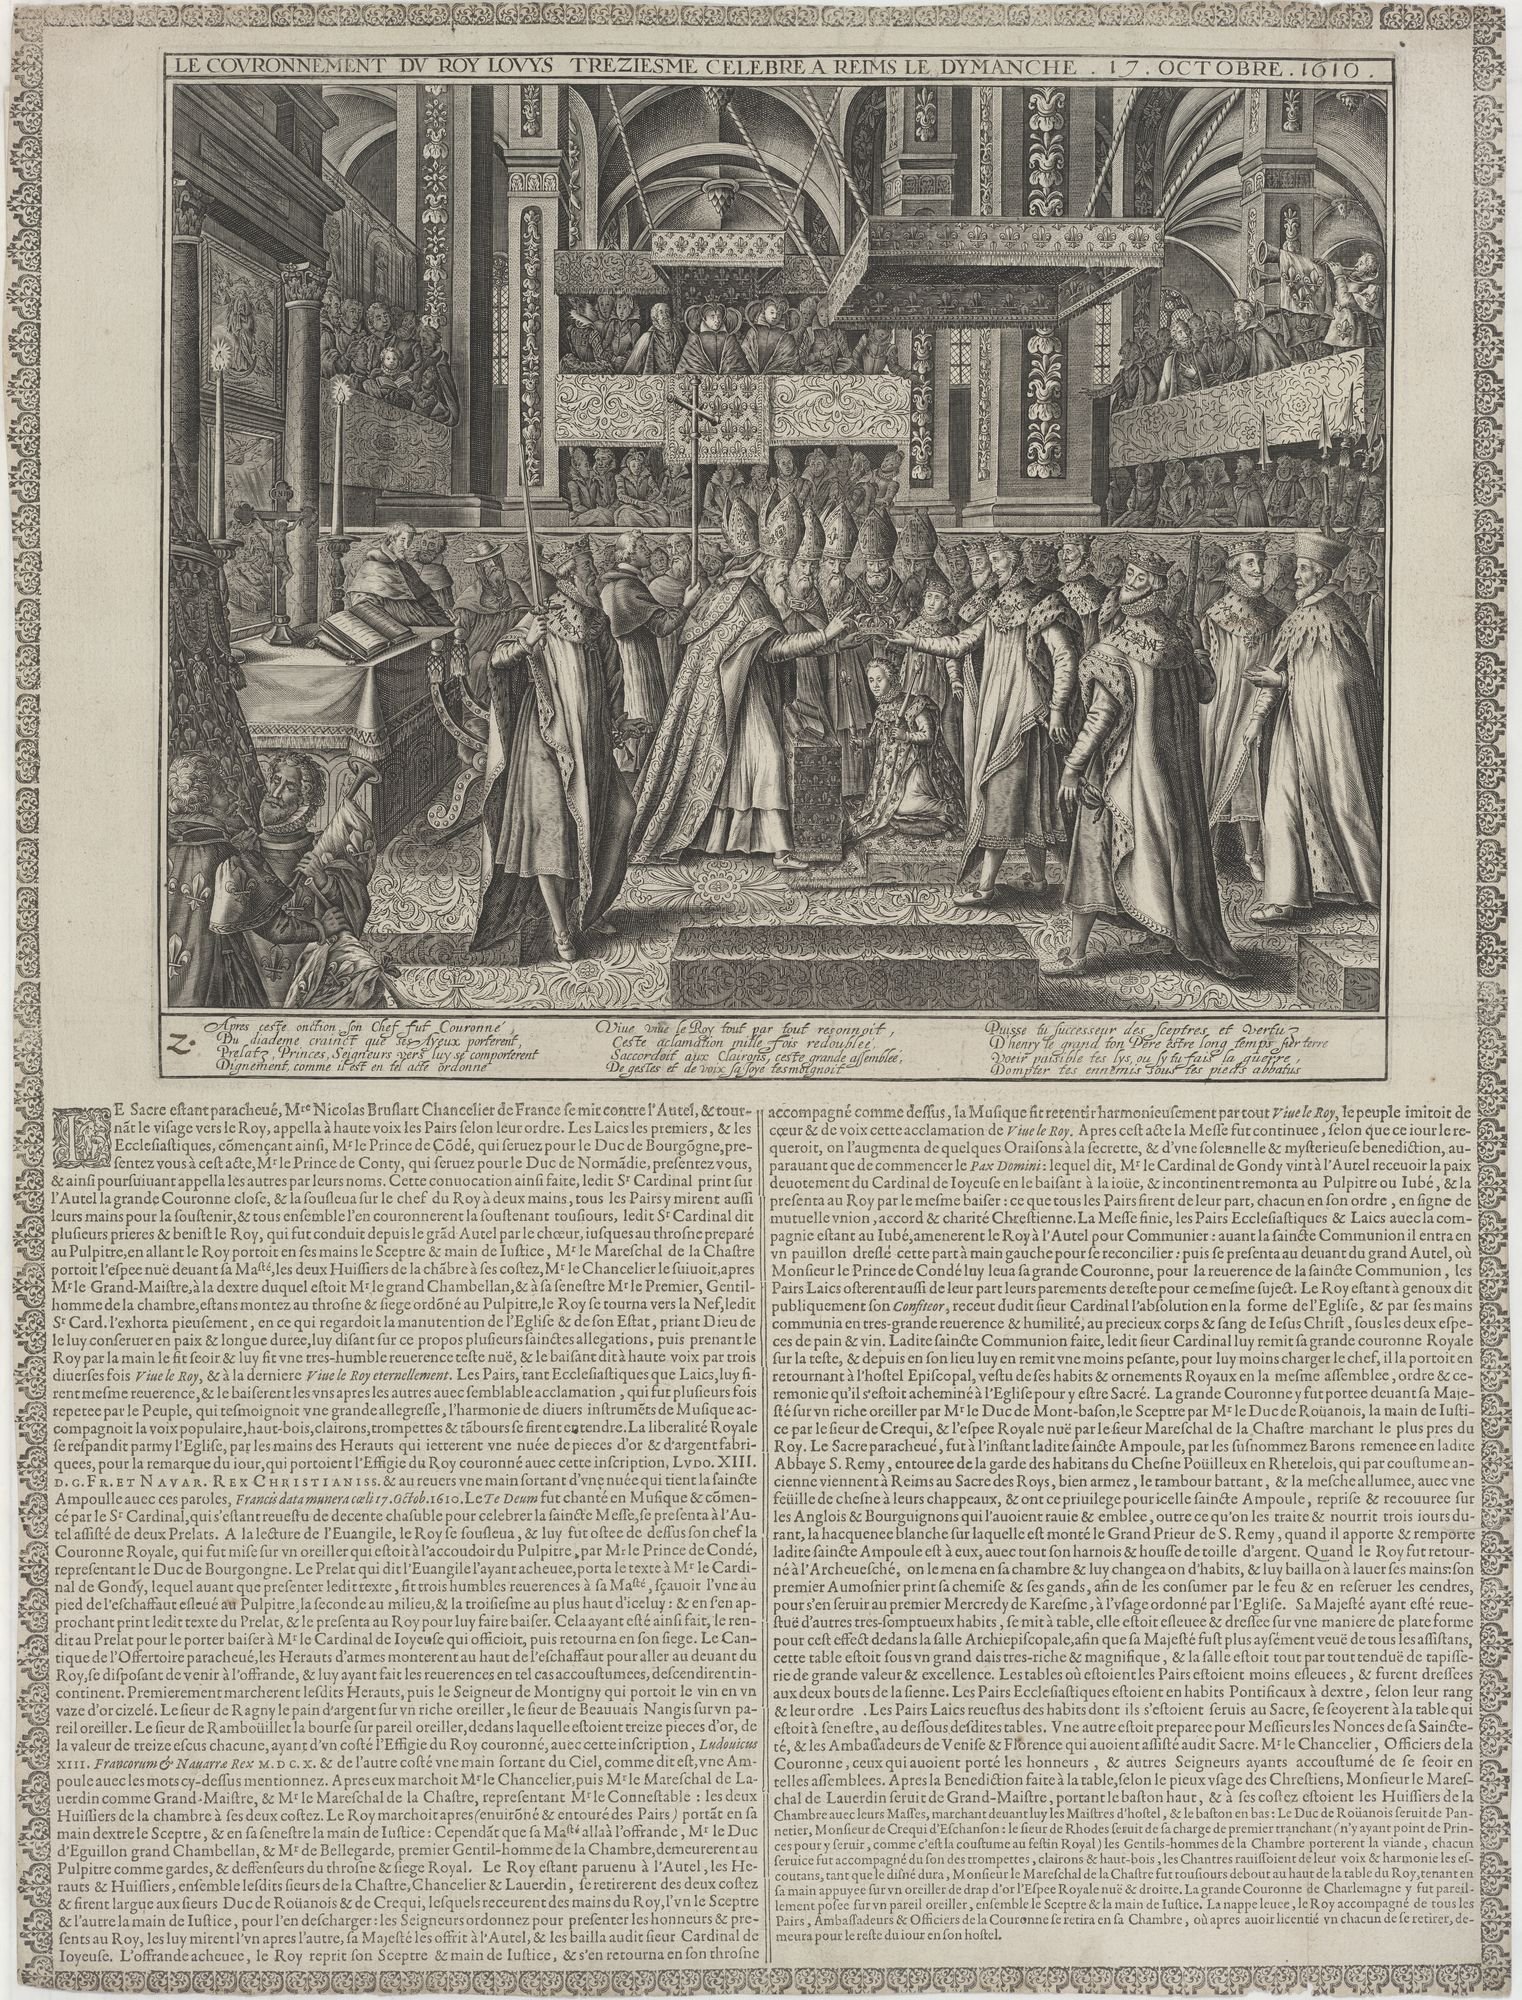 LE COURONNEMENT DU ROY LOUYS TREZIESME CELEBRE A REIMS LE DYMANCHE. 17. OCTOBRE. 1610. (Kulturstiftung Sachsen-Anhalt Public Domain Mark)